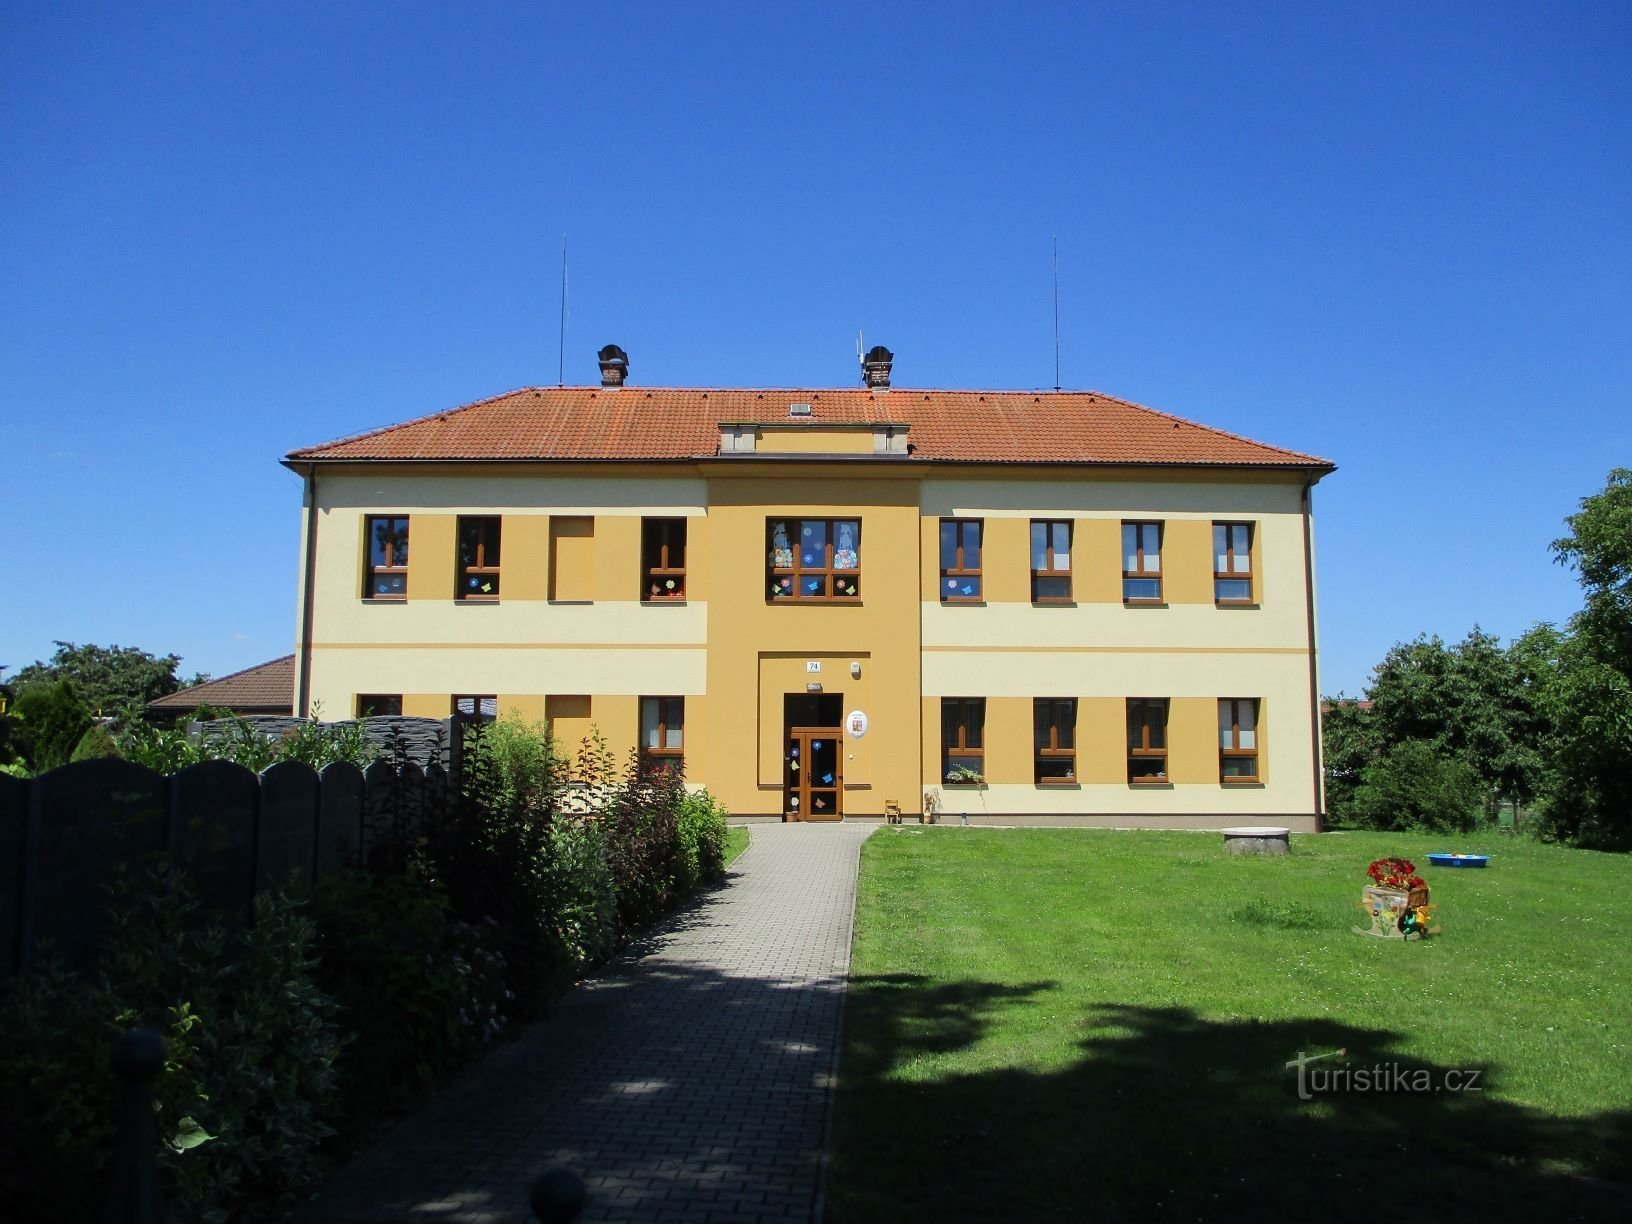 学校（Třesovice，14.7.2020 年 XNUMX 月 XNUMX 日）